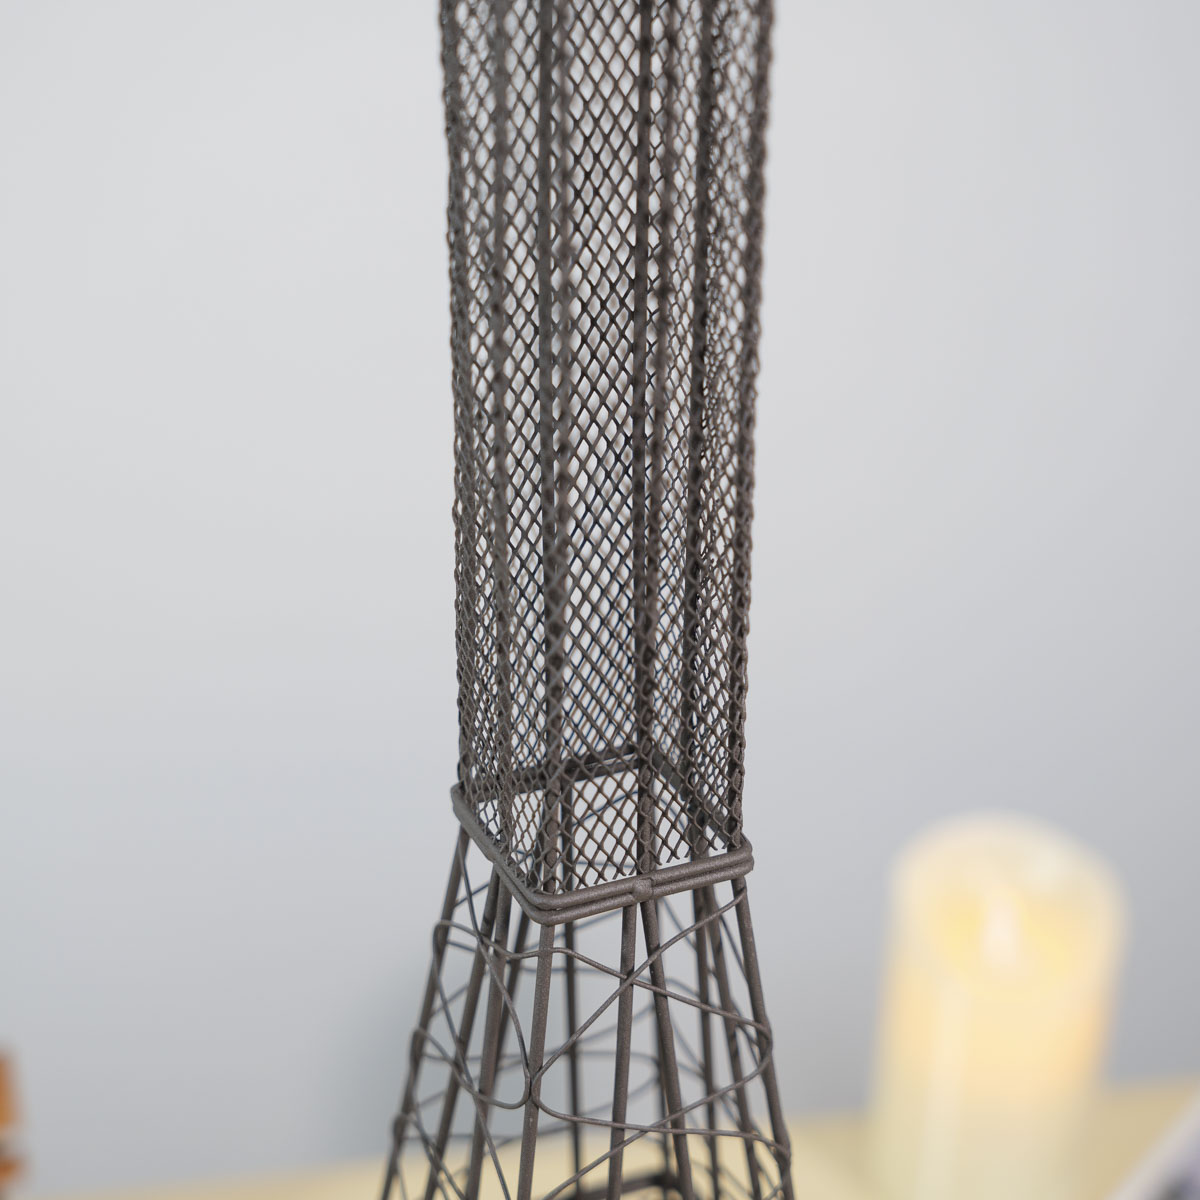 에펠타워 빈티지촛대 철제 캔들홀더 철망부분 디테일